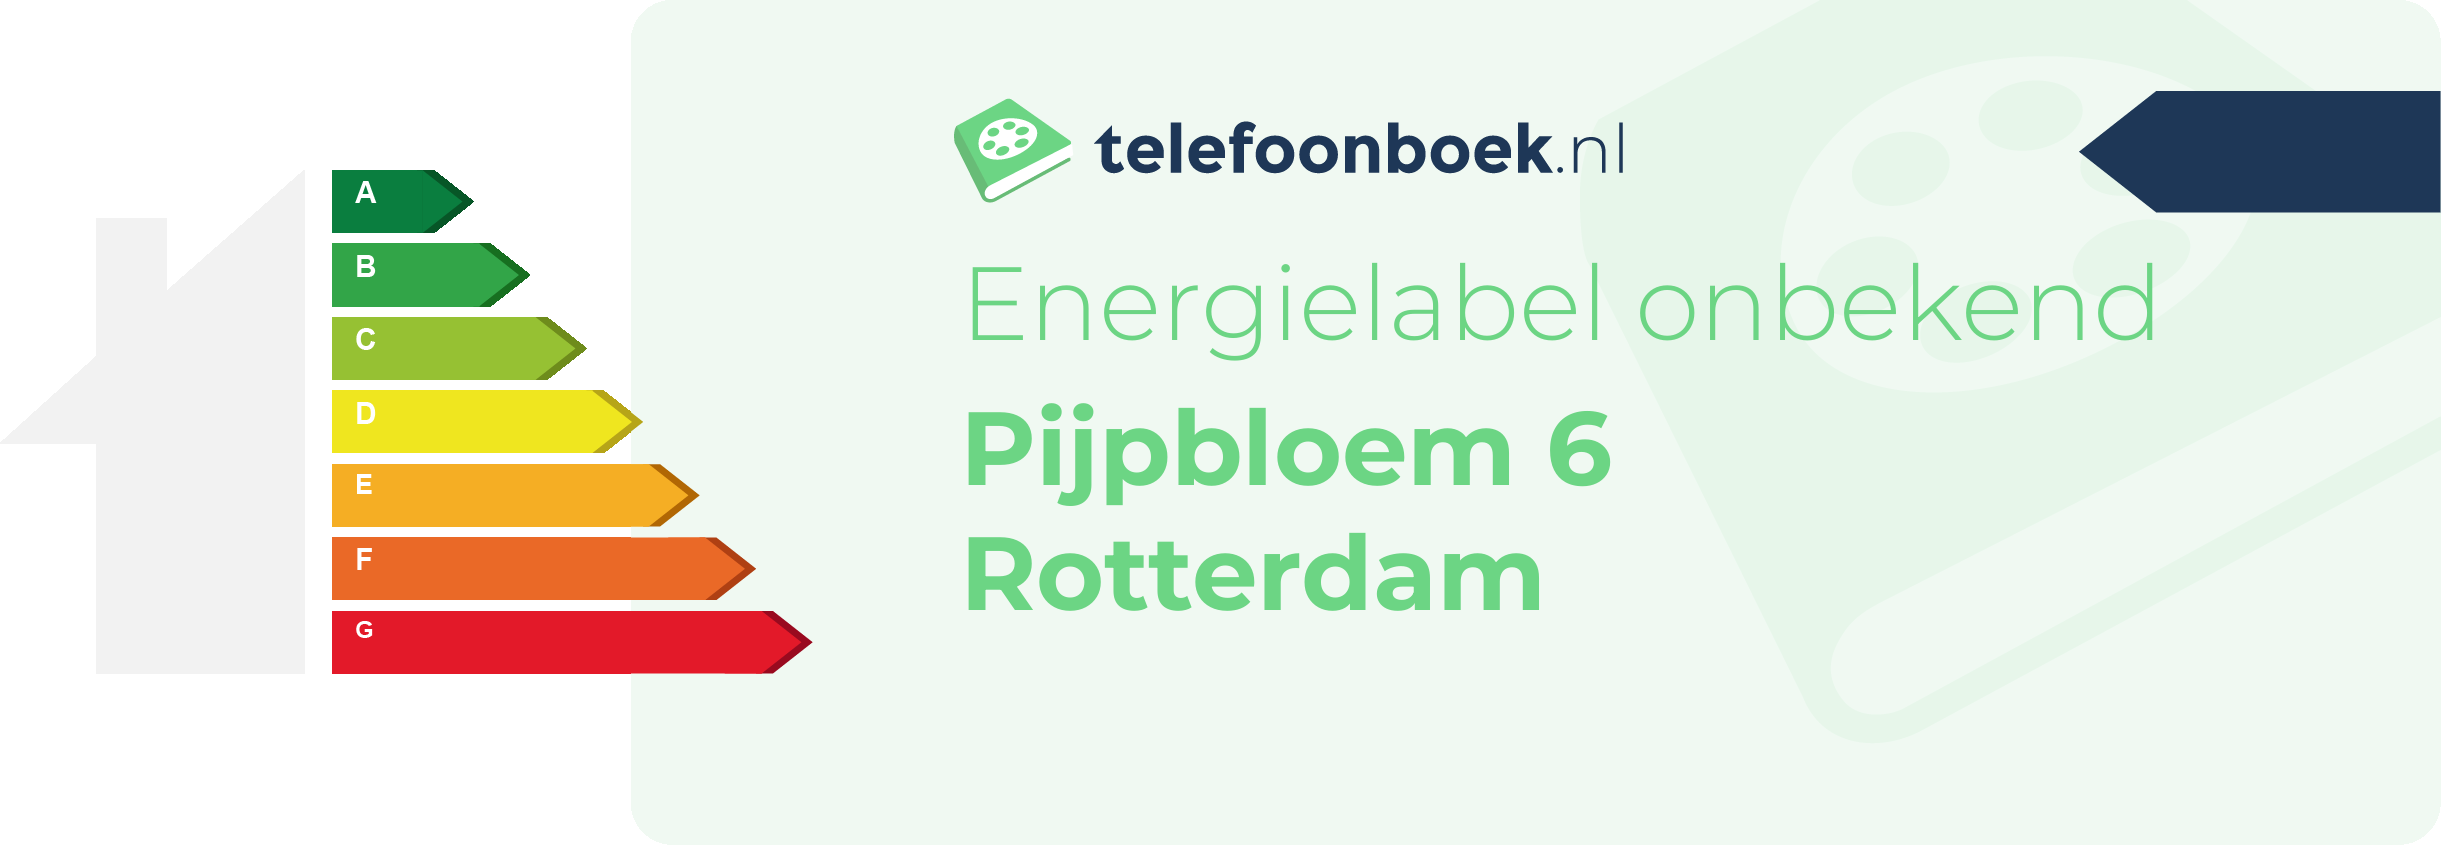 Energielabel Pijpbloem 6 Rotterdam